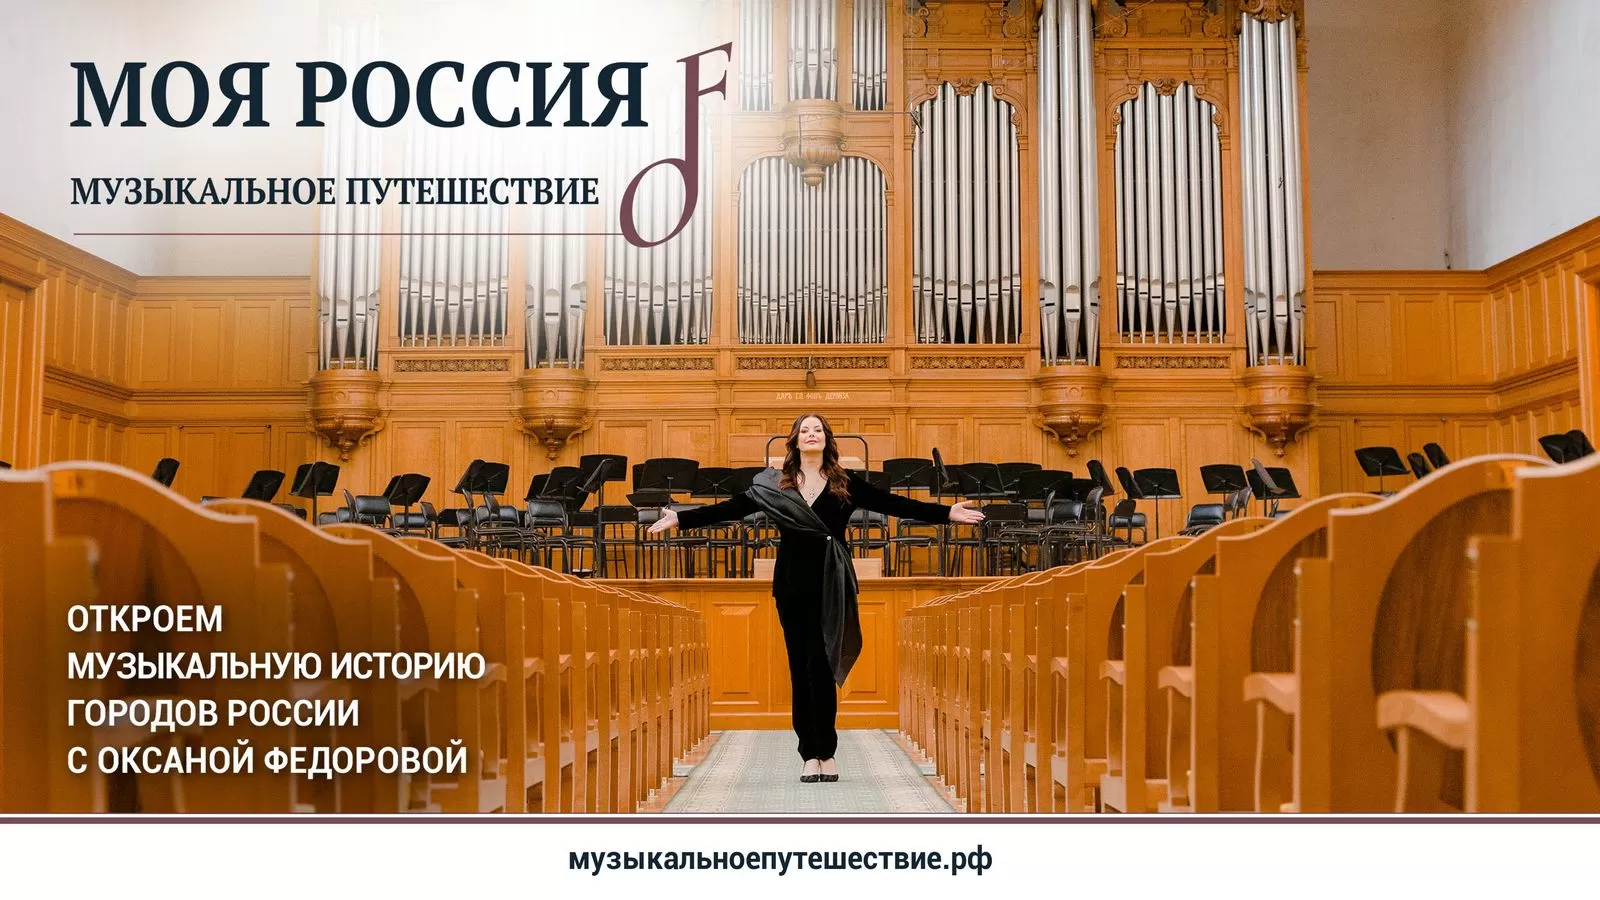 Первый сезон проекта «Моя Россия: музыкальное путешествие» доступен в Okko